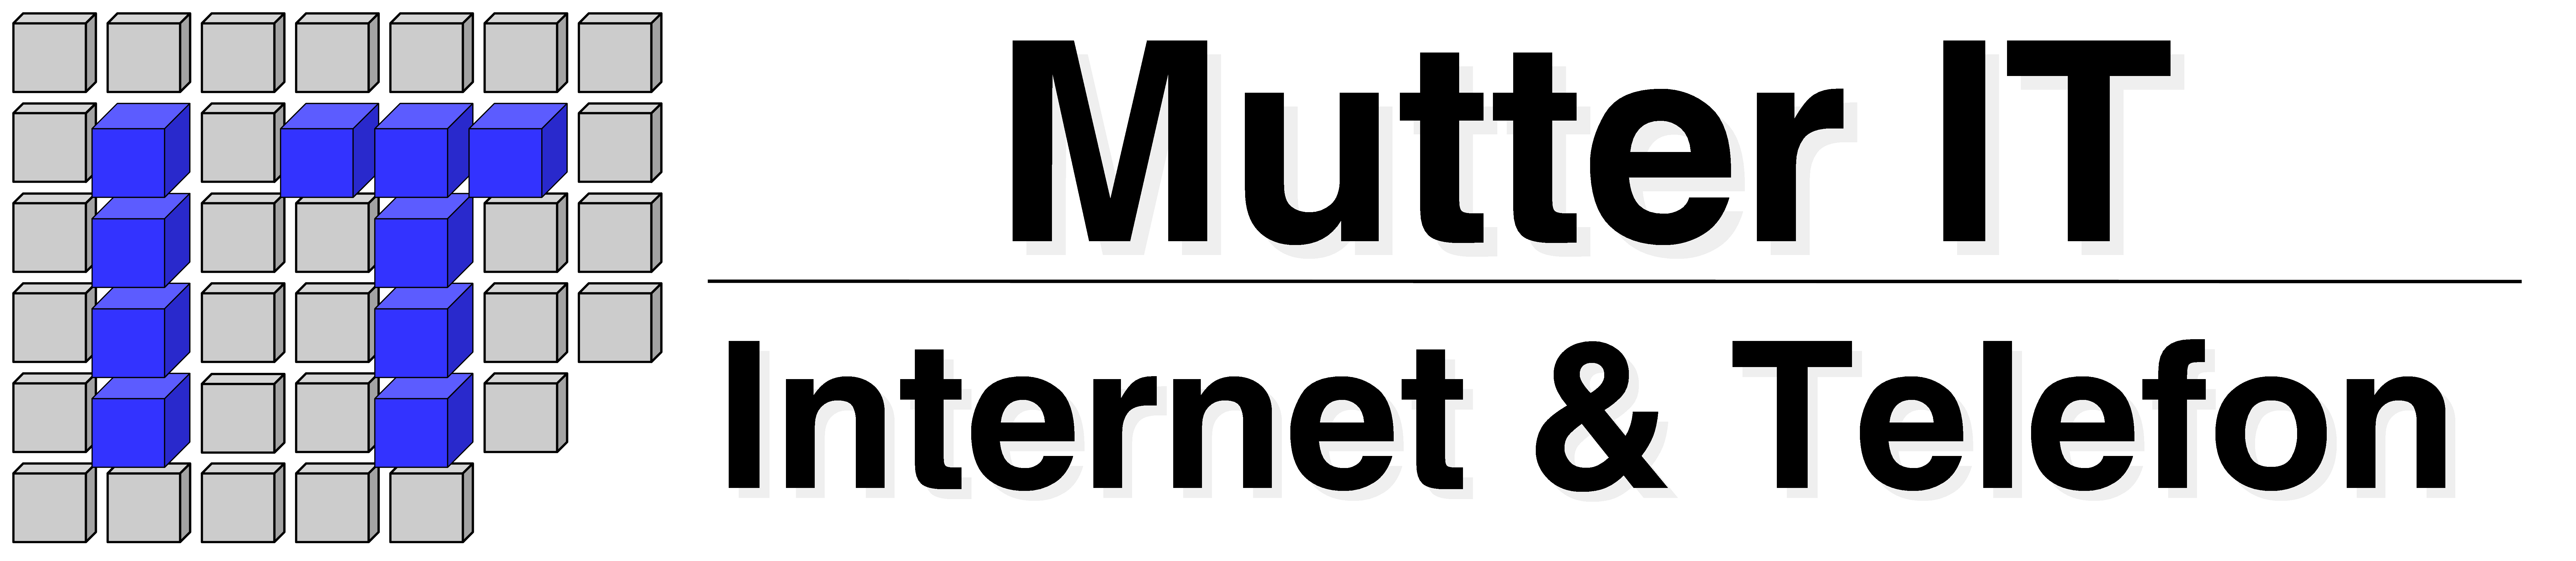 Mutter IT-Internet & Telefon